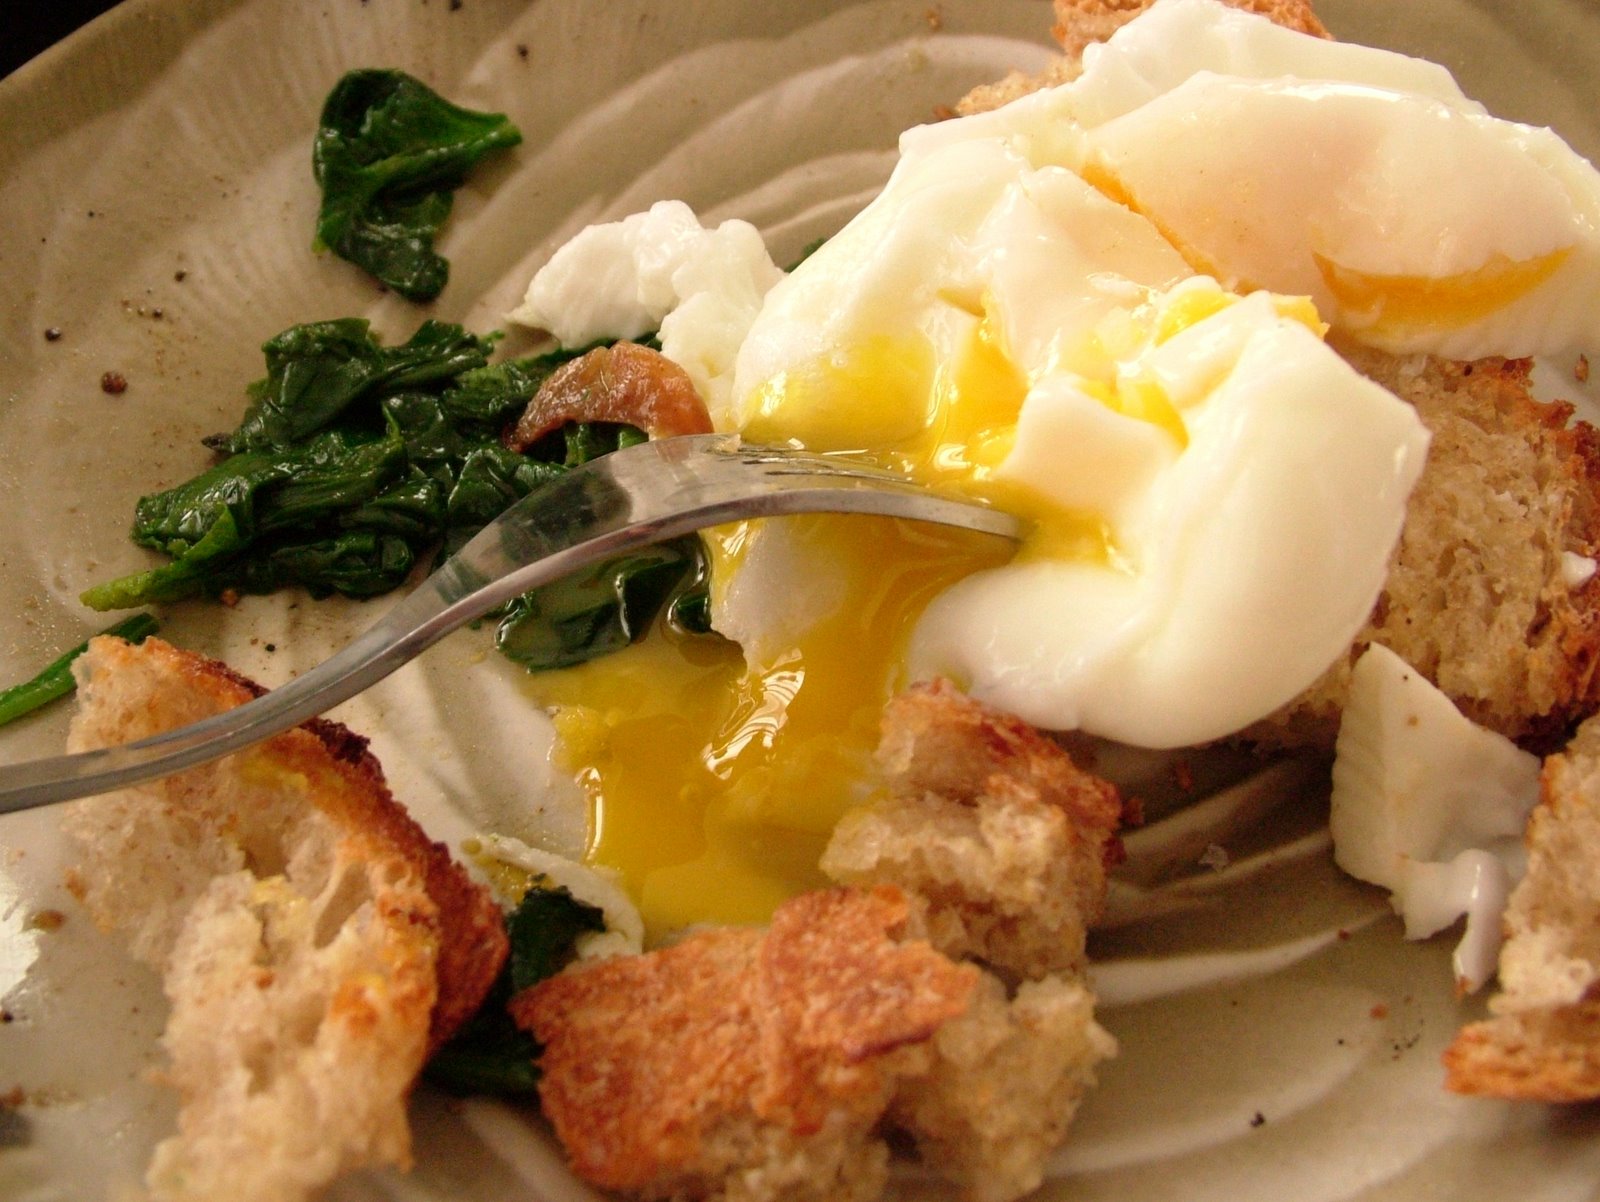 [Eggs+&+toast+&+spinach.jpg]